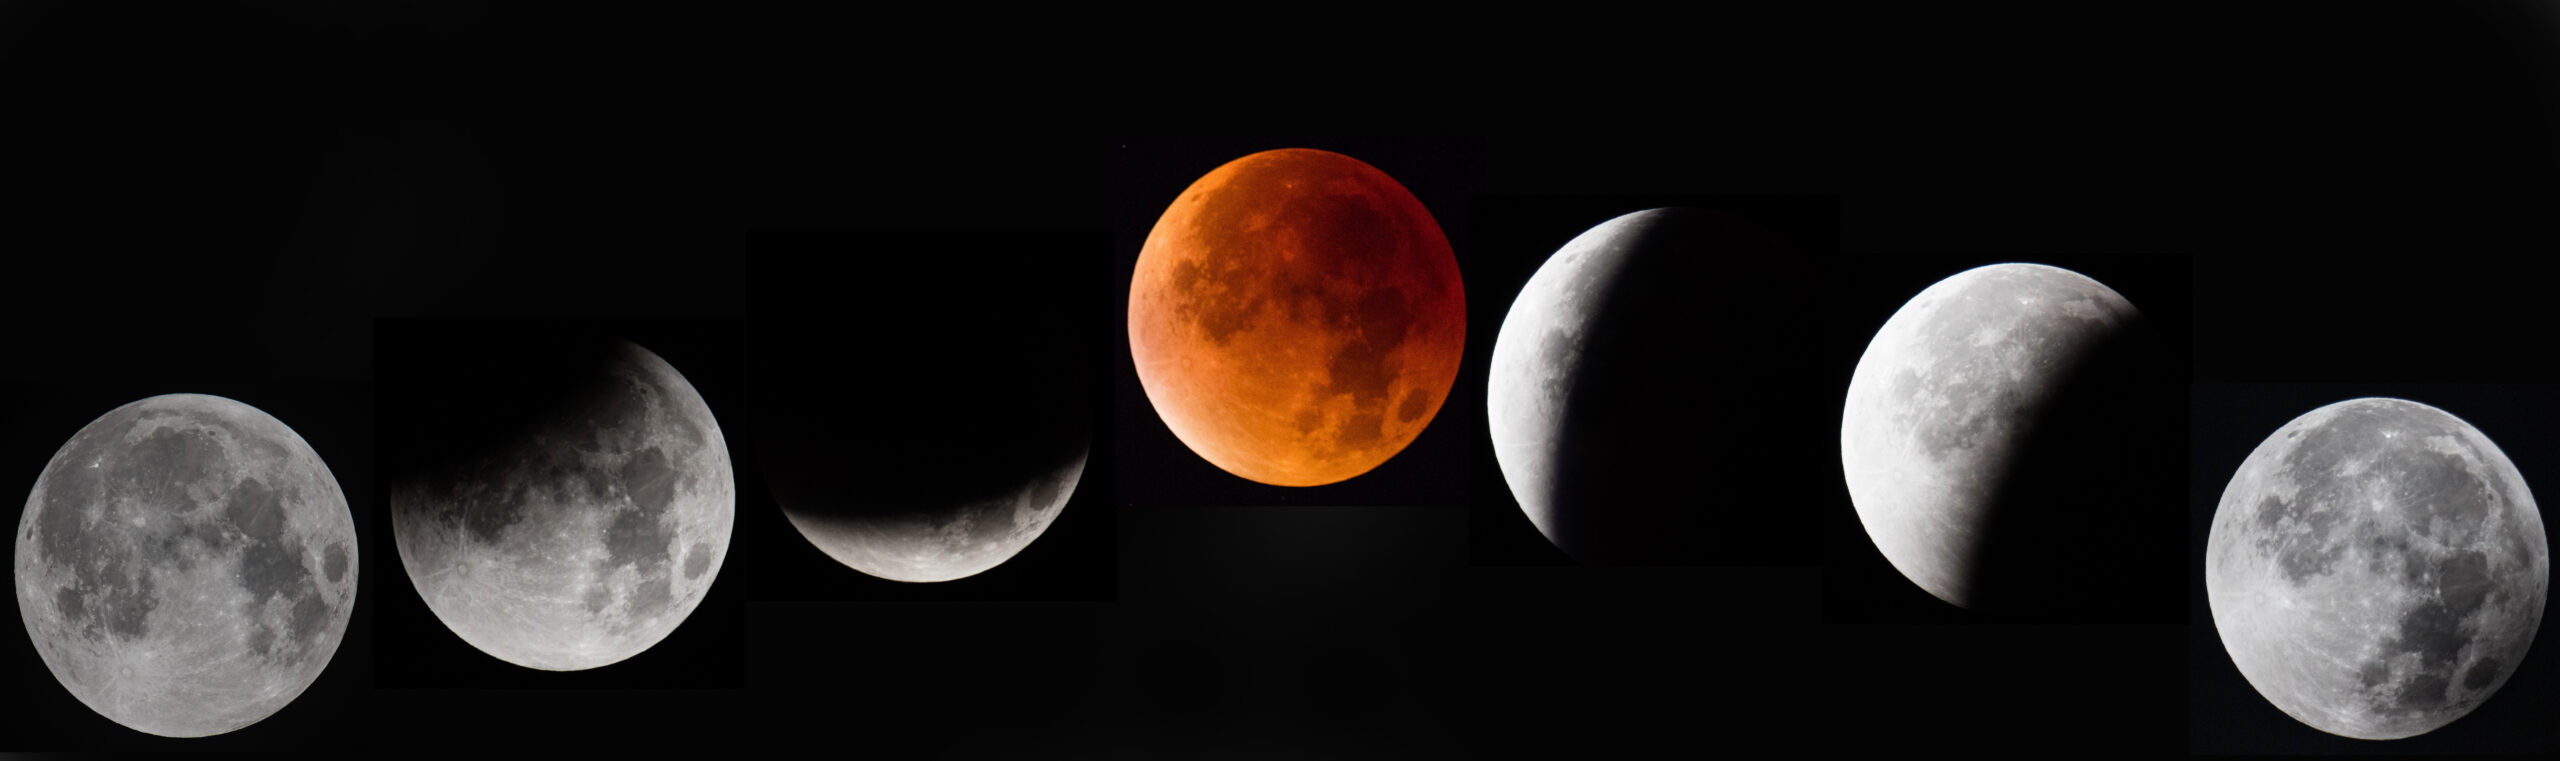 lunar eclipse 2022 star igns